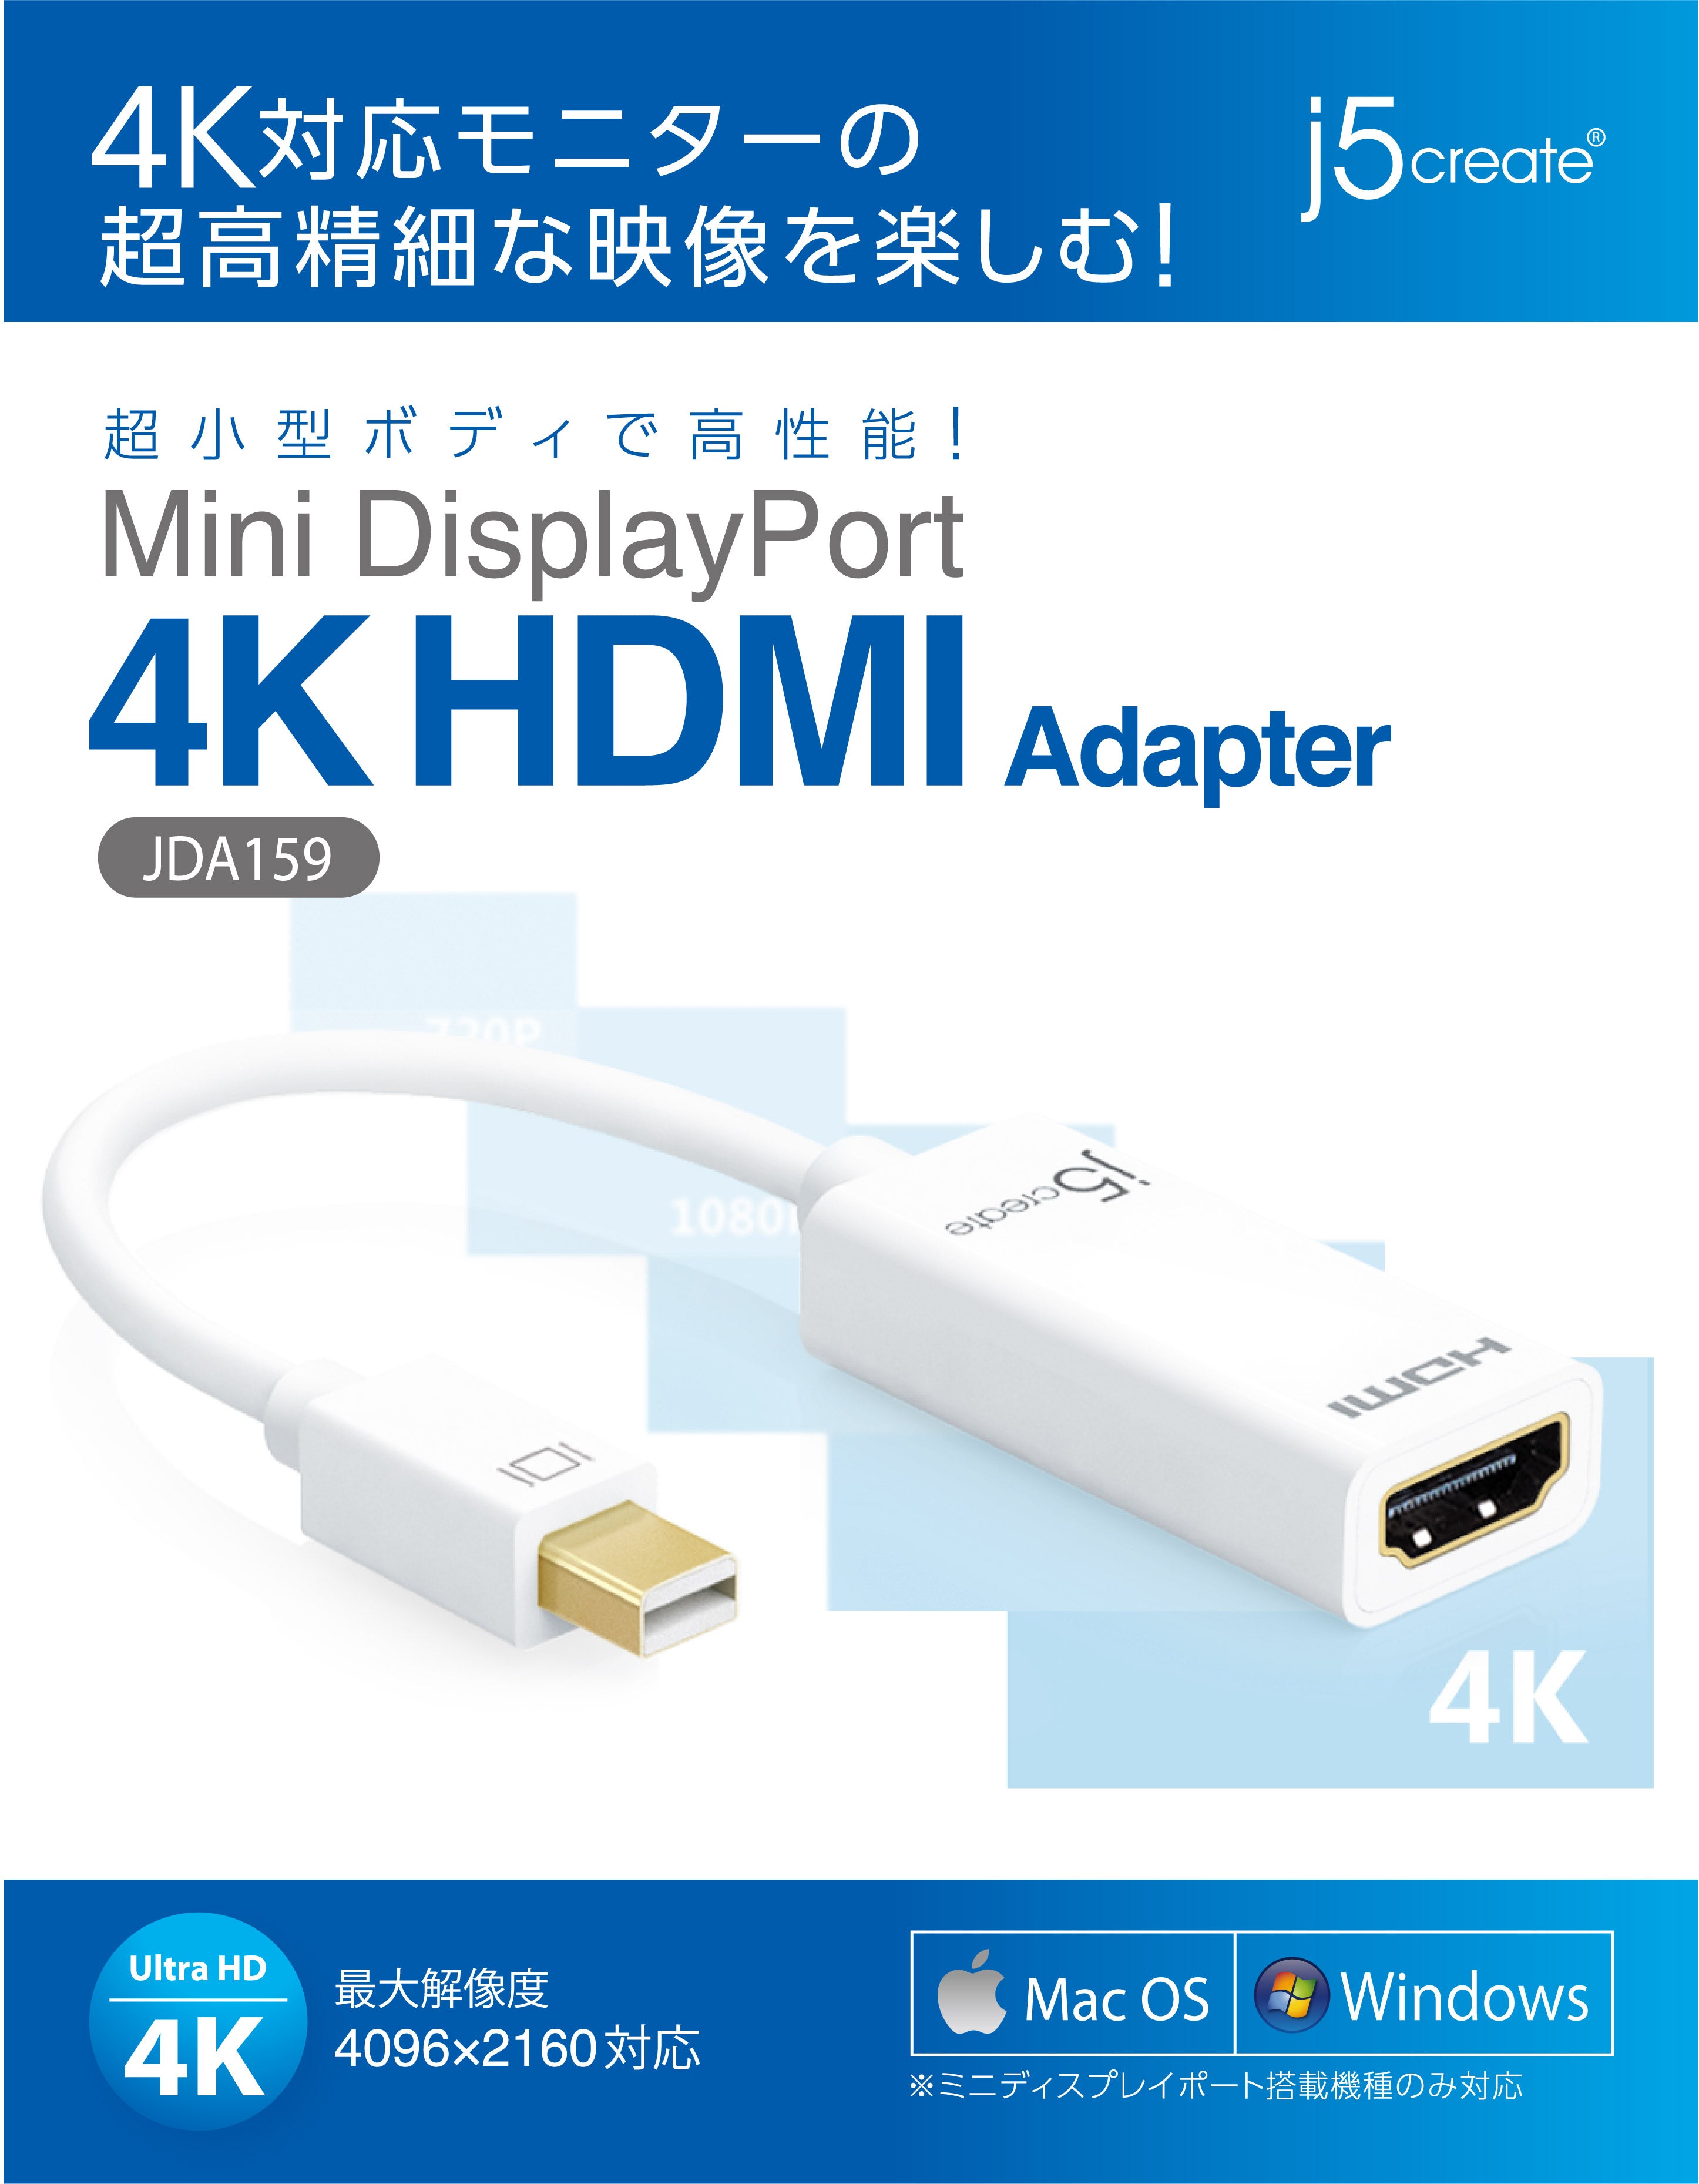 Jda159 Mini Displayport To 4k Hdmiアダプター New Jp J5create